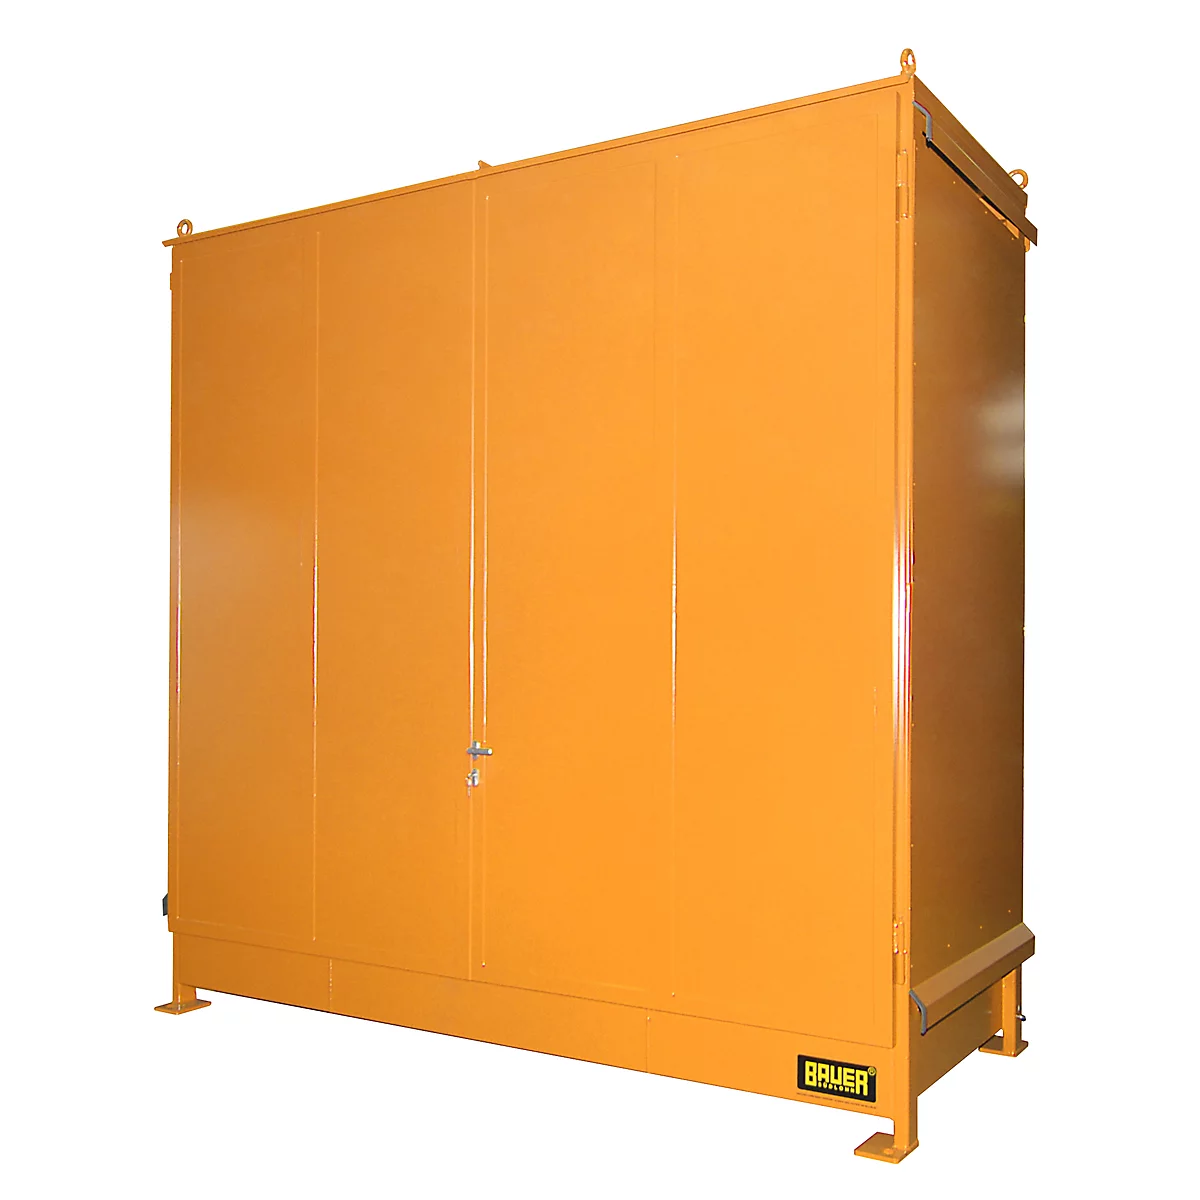 Contenedor BAUER CEN 33-2 IBC, acero, puerta de doble hoja, ancho 3510 x fondo 1480 x alto 3445 mm, naranja